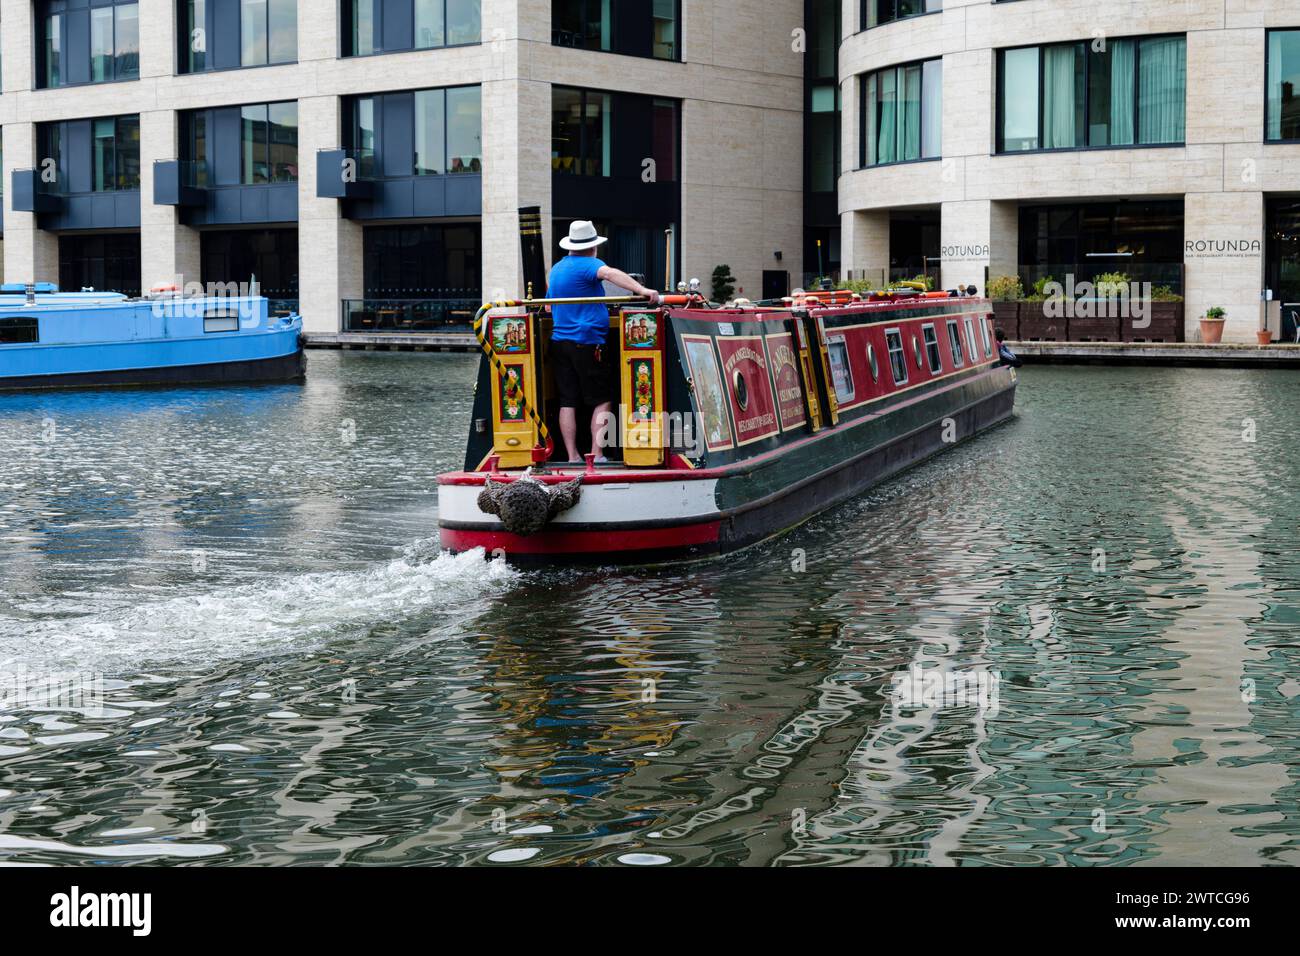 Londres - 06 03 2022 : Sailor amène un navire de tourisme au port sur le Regent's canal près du bassin de Battlebridge Banque D'Images